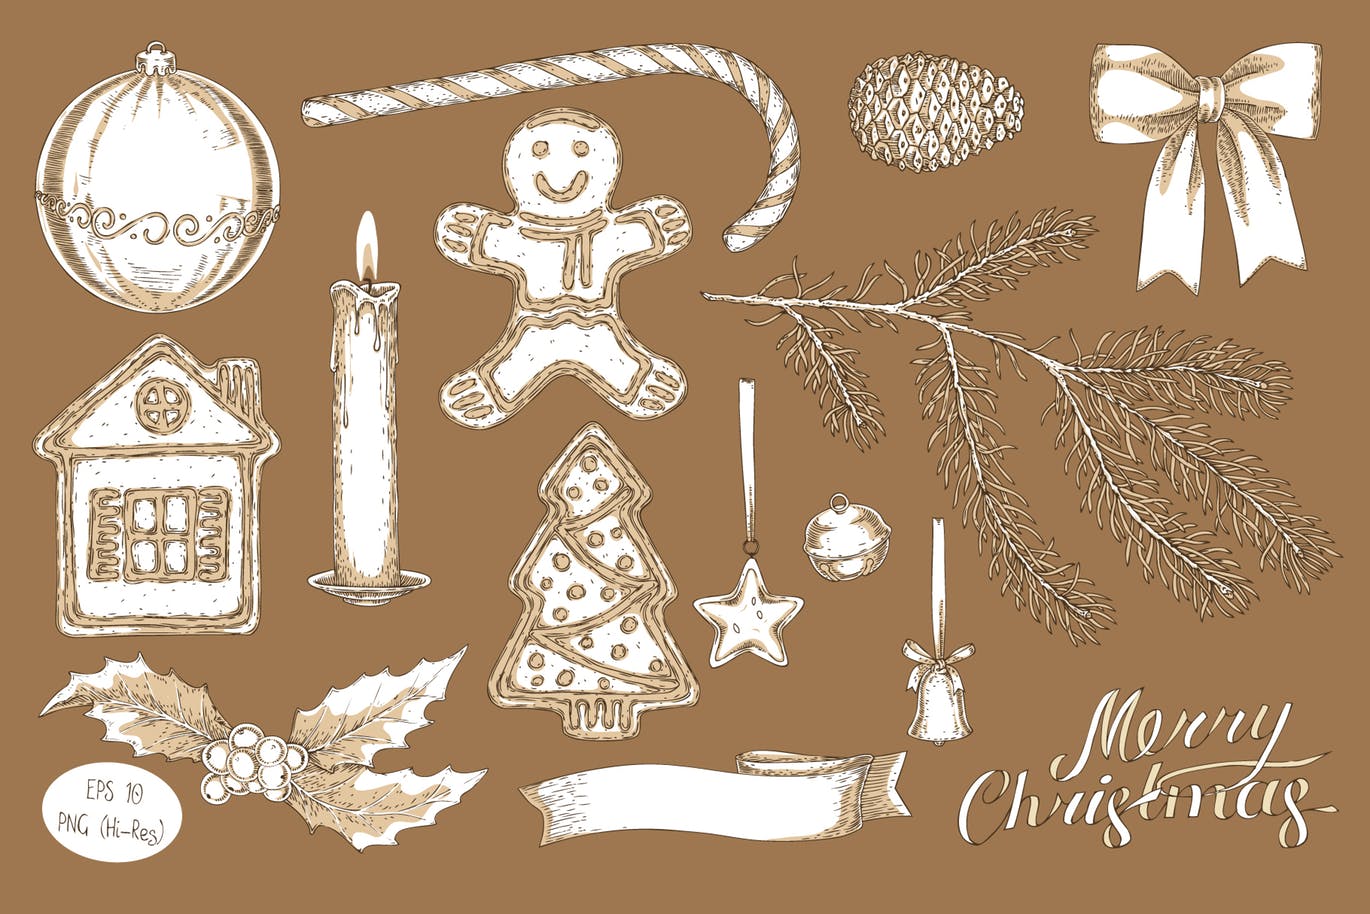 创意圣诞节主题设计矢量图案素材包 Merry Christmas Design Set插图(2)